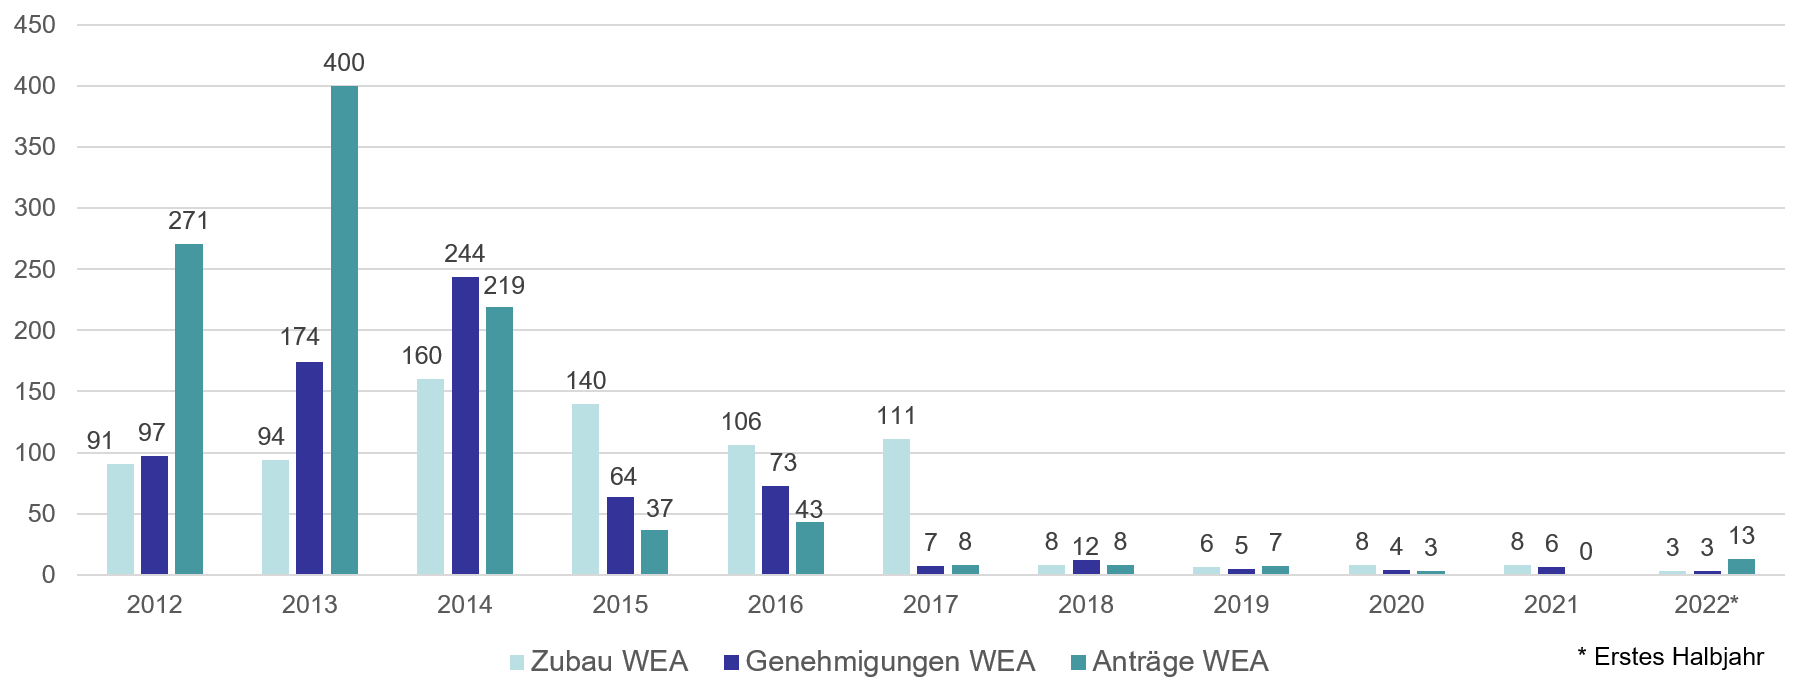 Grafik zur Entwicklung von Windenergieprojekten in Bayern in den vergangenen 10 Jahren